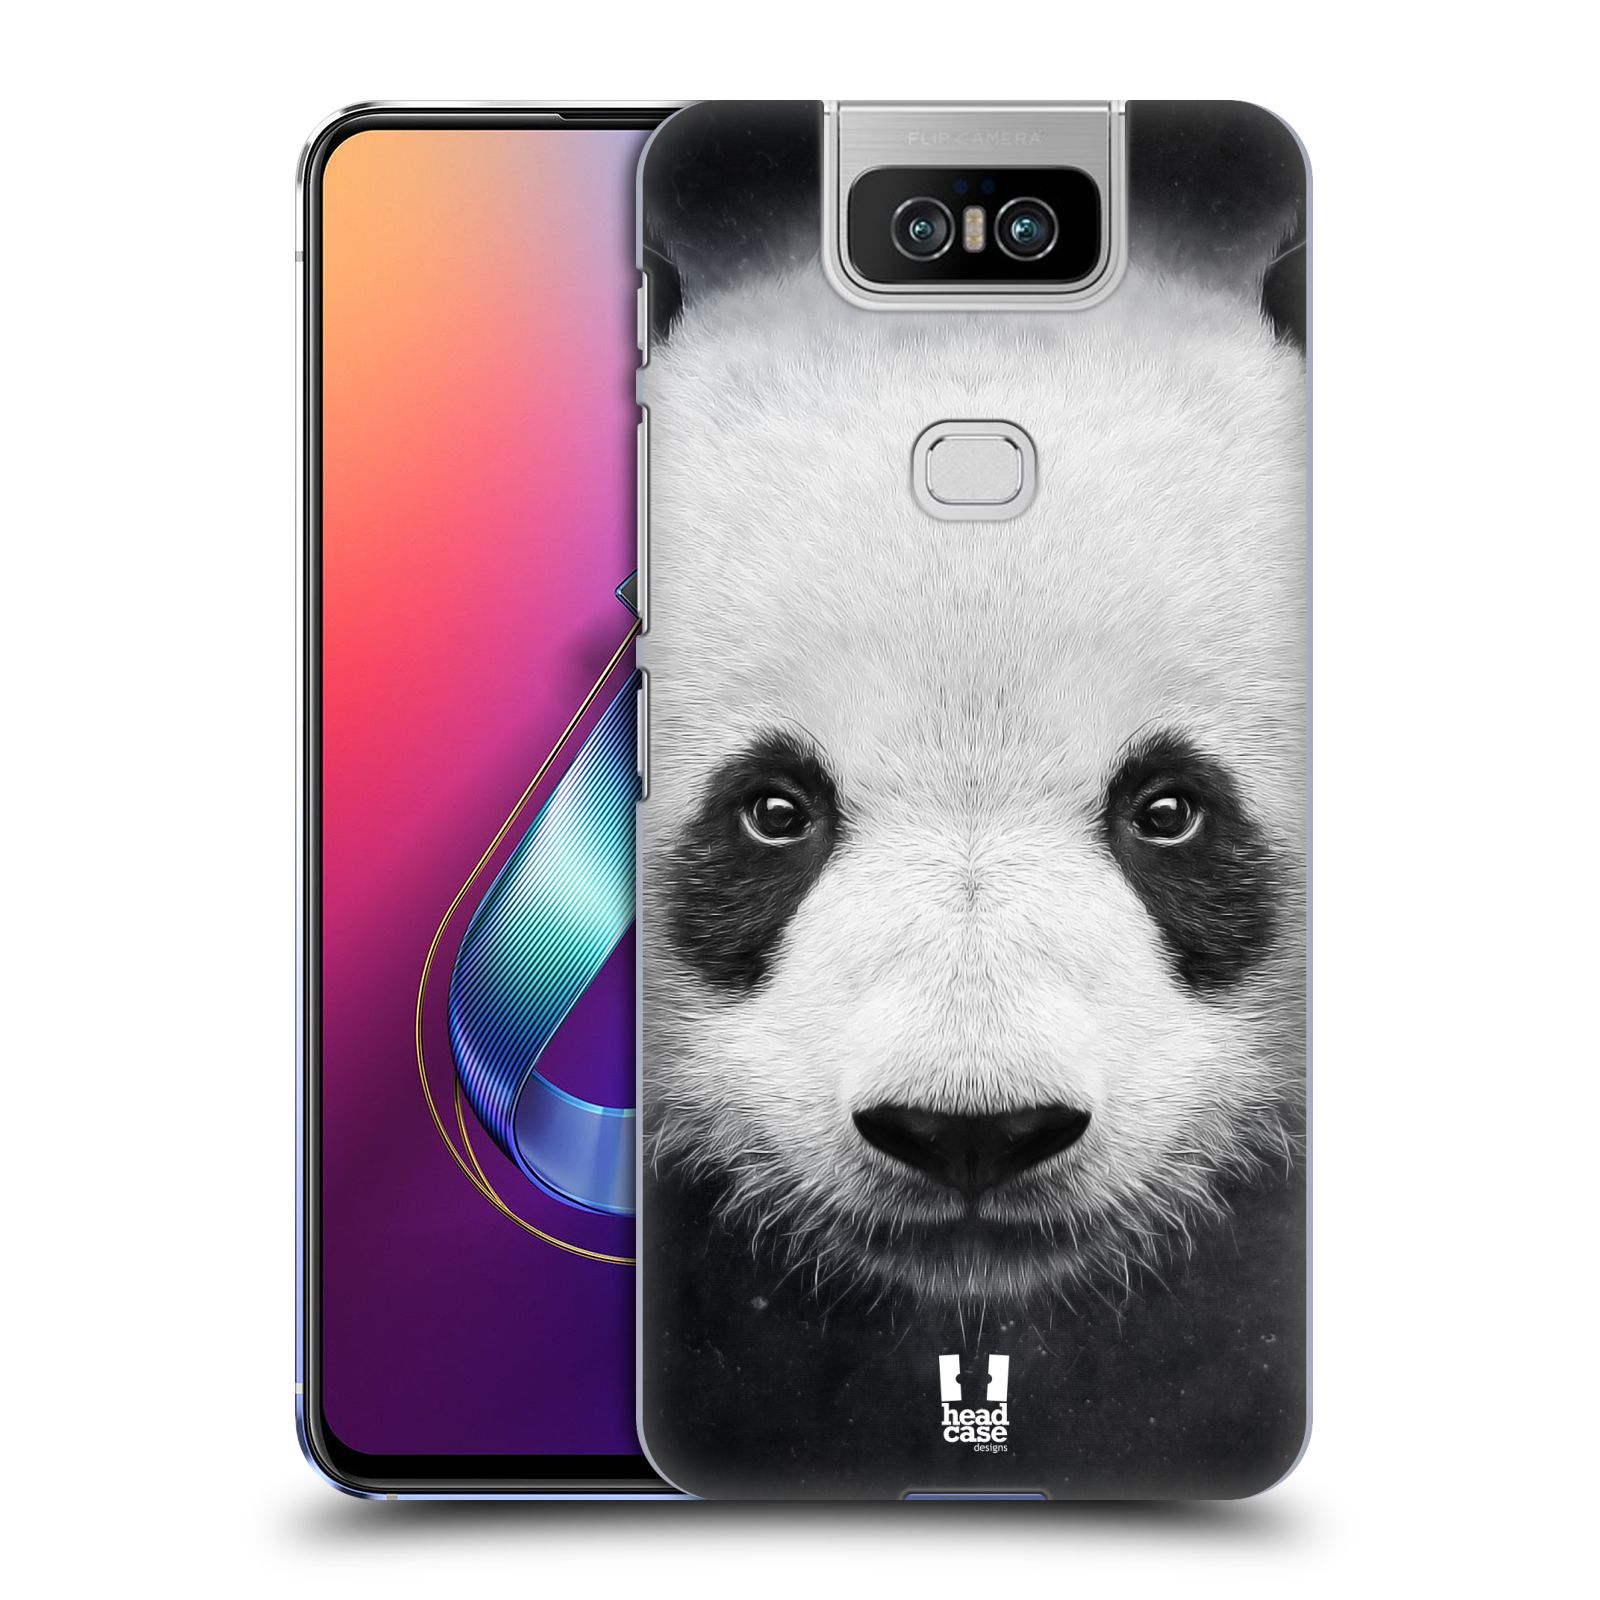 Pouzdro na mobil Asus Zenfone 6 ZS630KL - HEAD CASE - vzor Zvířecí tváře medvěd panda